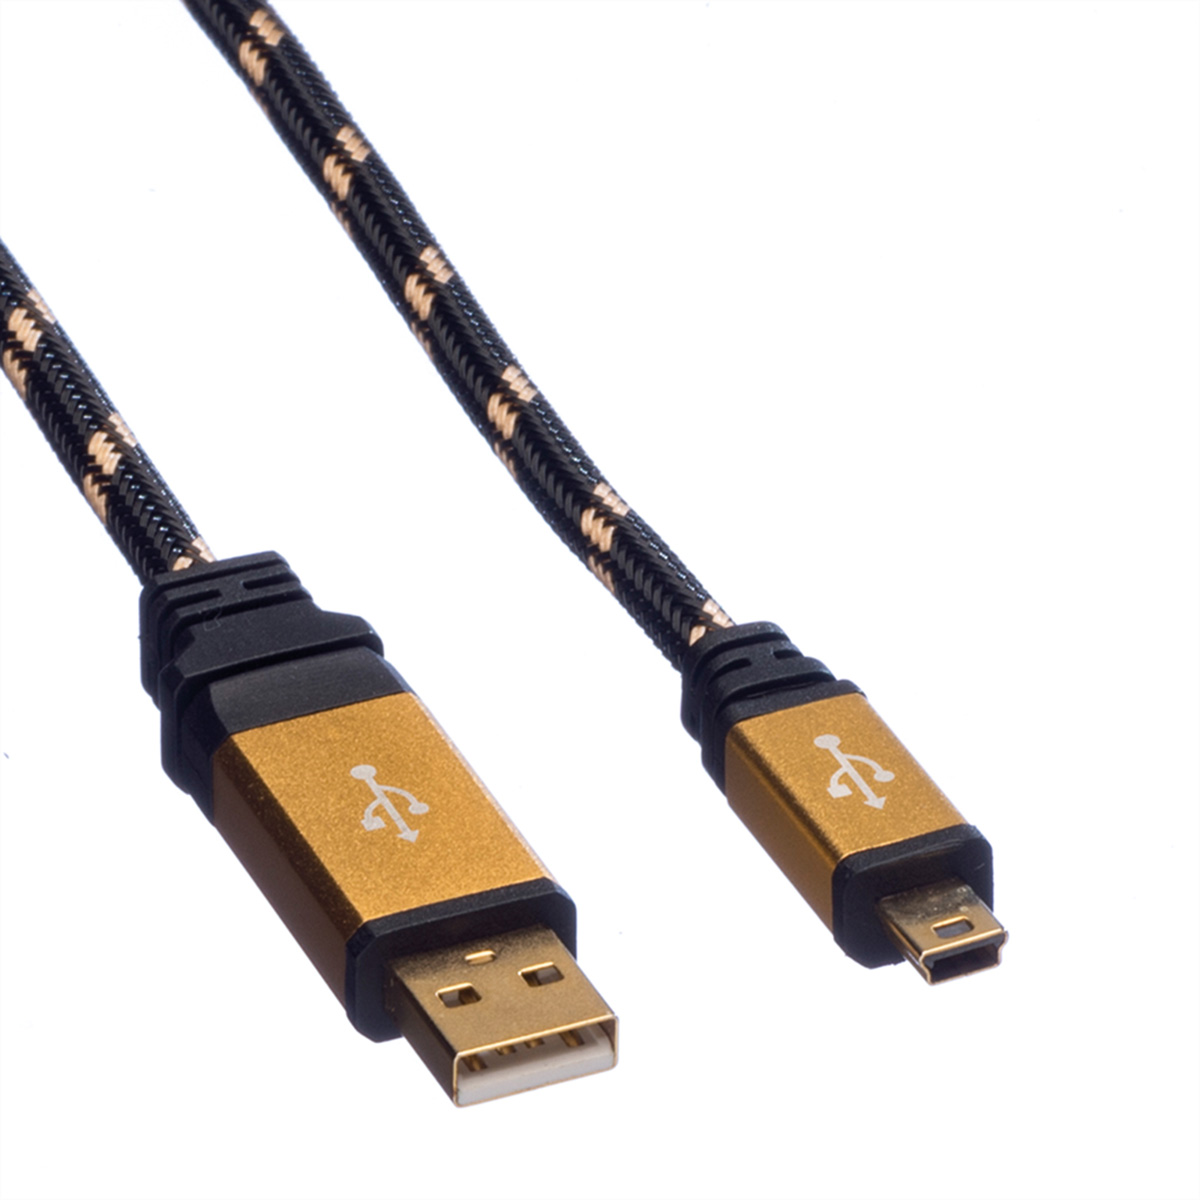 Mini A GOLD Kabel USB 2.0 - Kabel, 5-Pin USB Typ Mini ROLINE 2.0